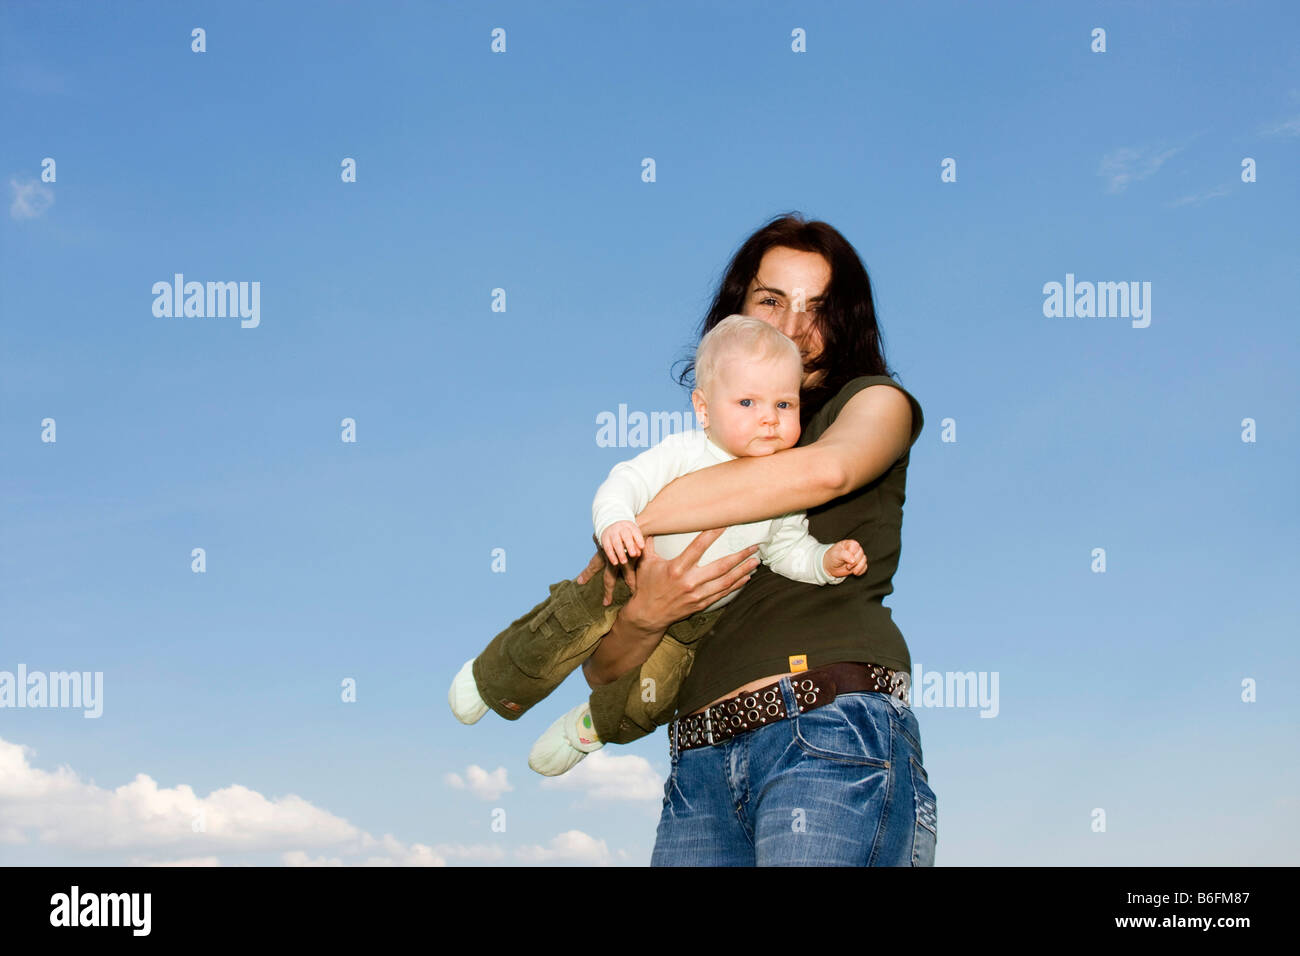 La mère, âgée de 32 ans, et son bébé, 9 mois, à l'extérieur Banque D'Images